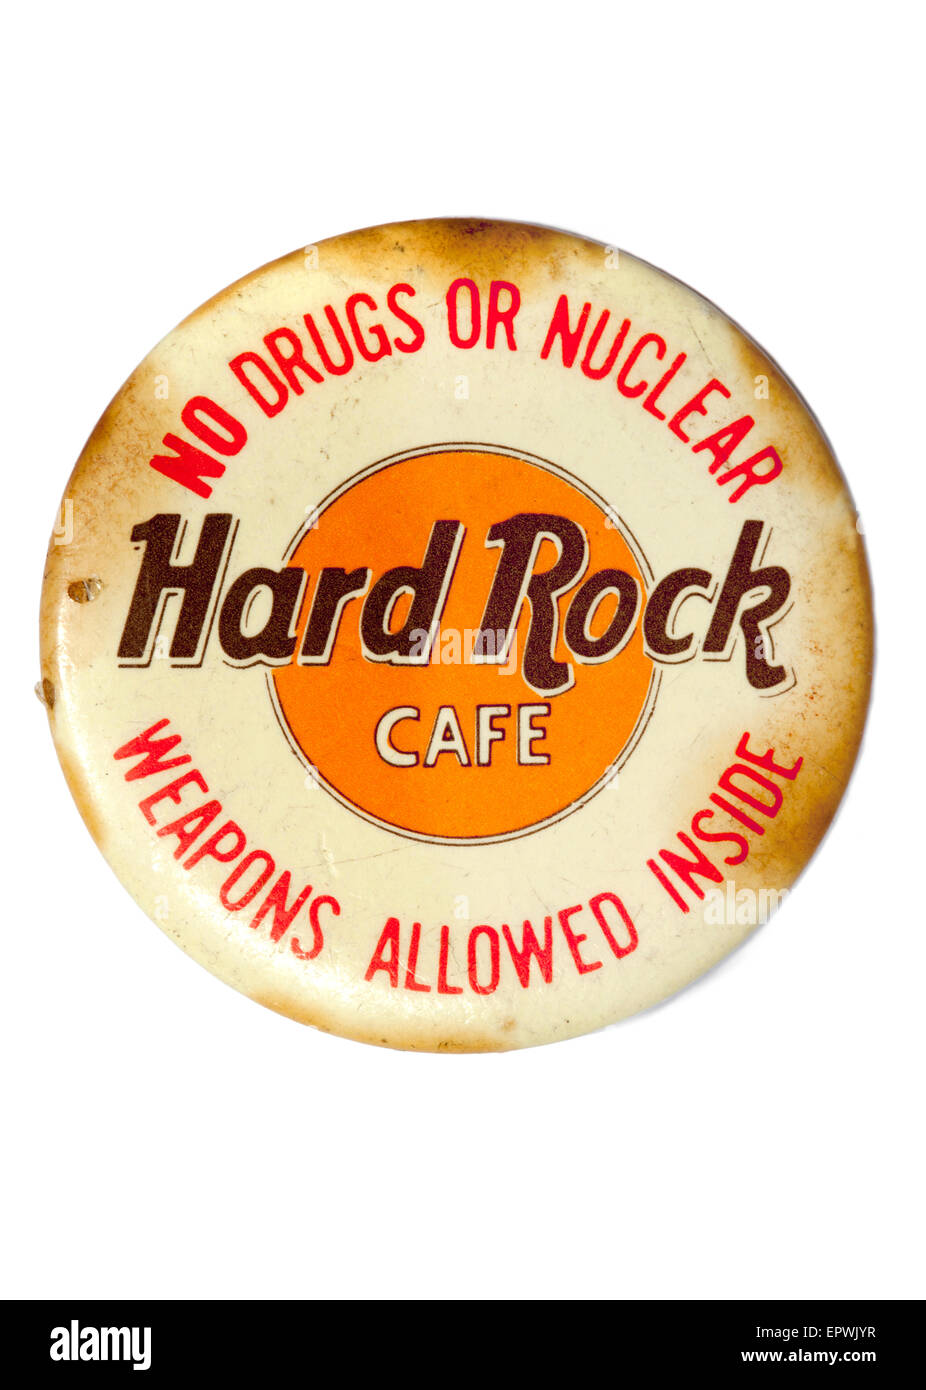 Vintage oder alte verwendet Hard Rock Cafe Abzeichen oder Stift auf weißem  Hintergrund Stockfotografie - Alamy